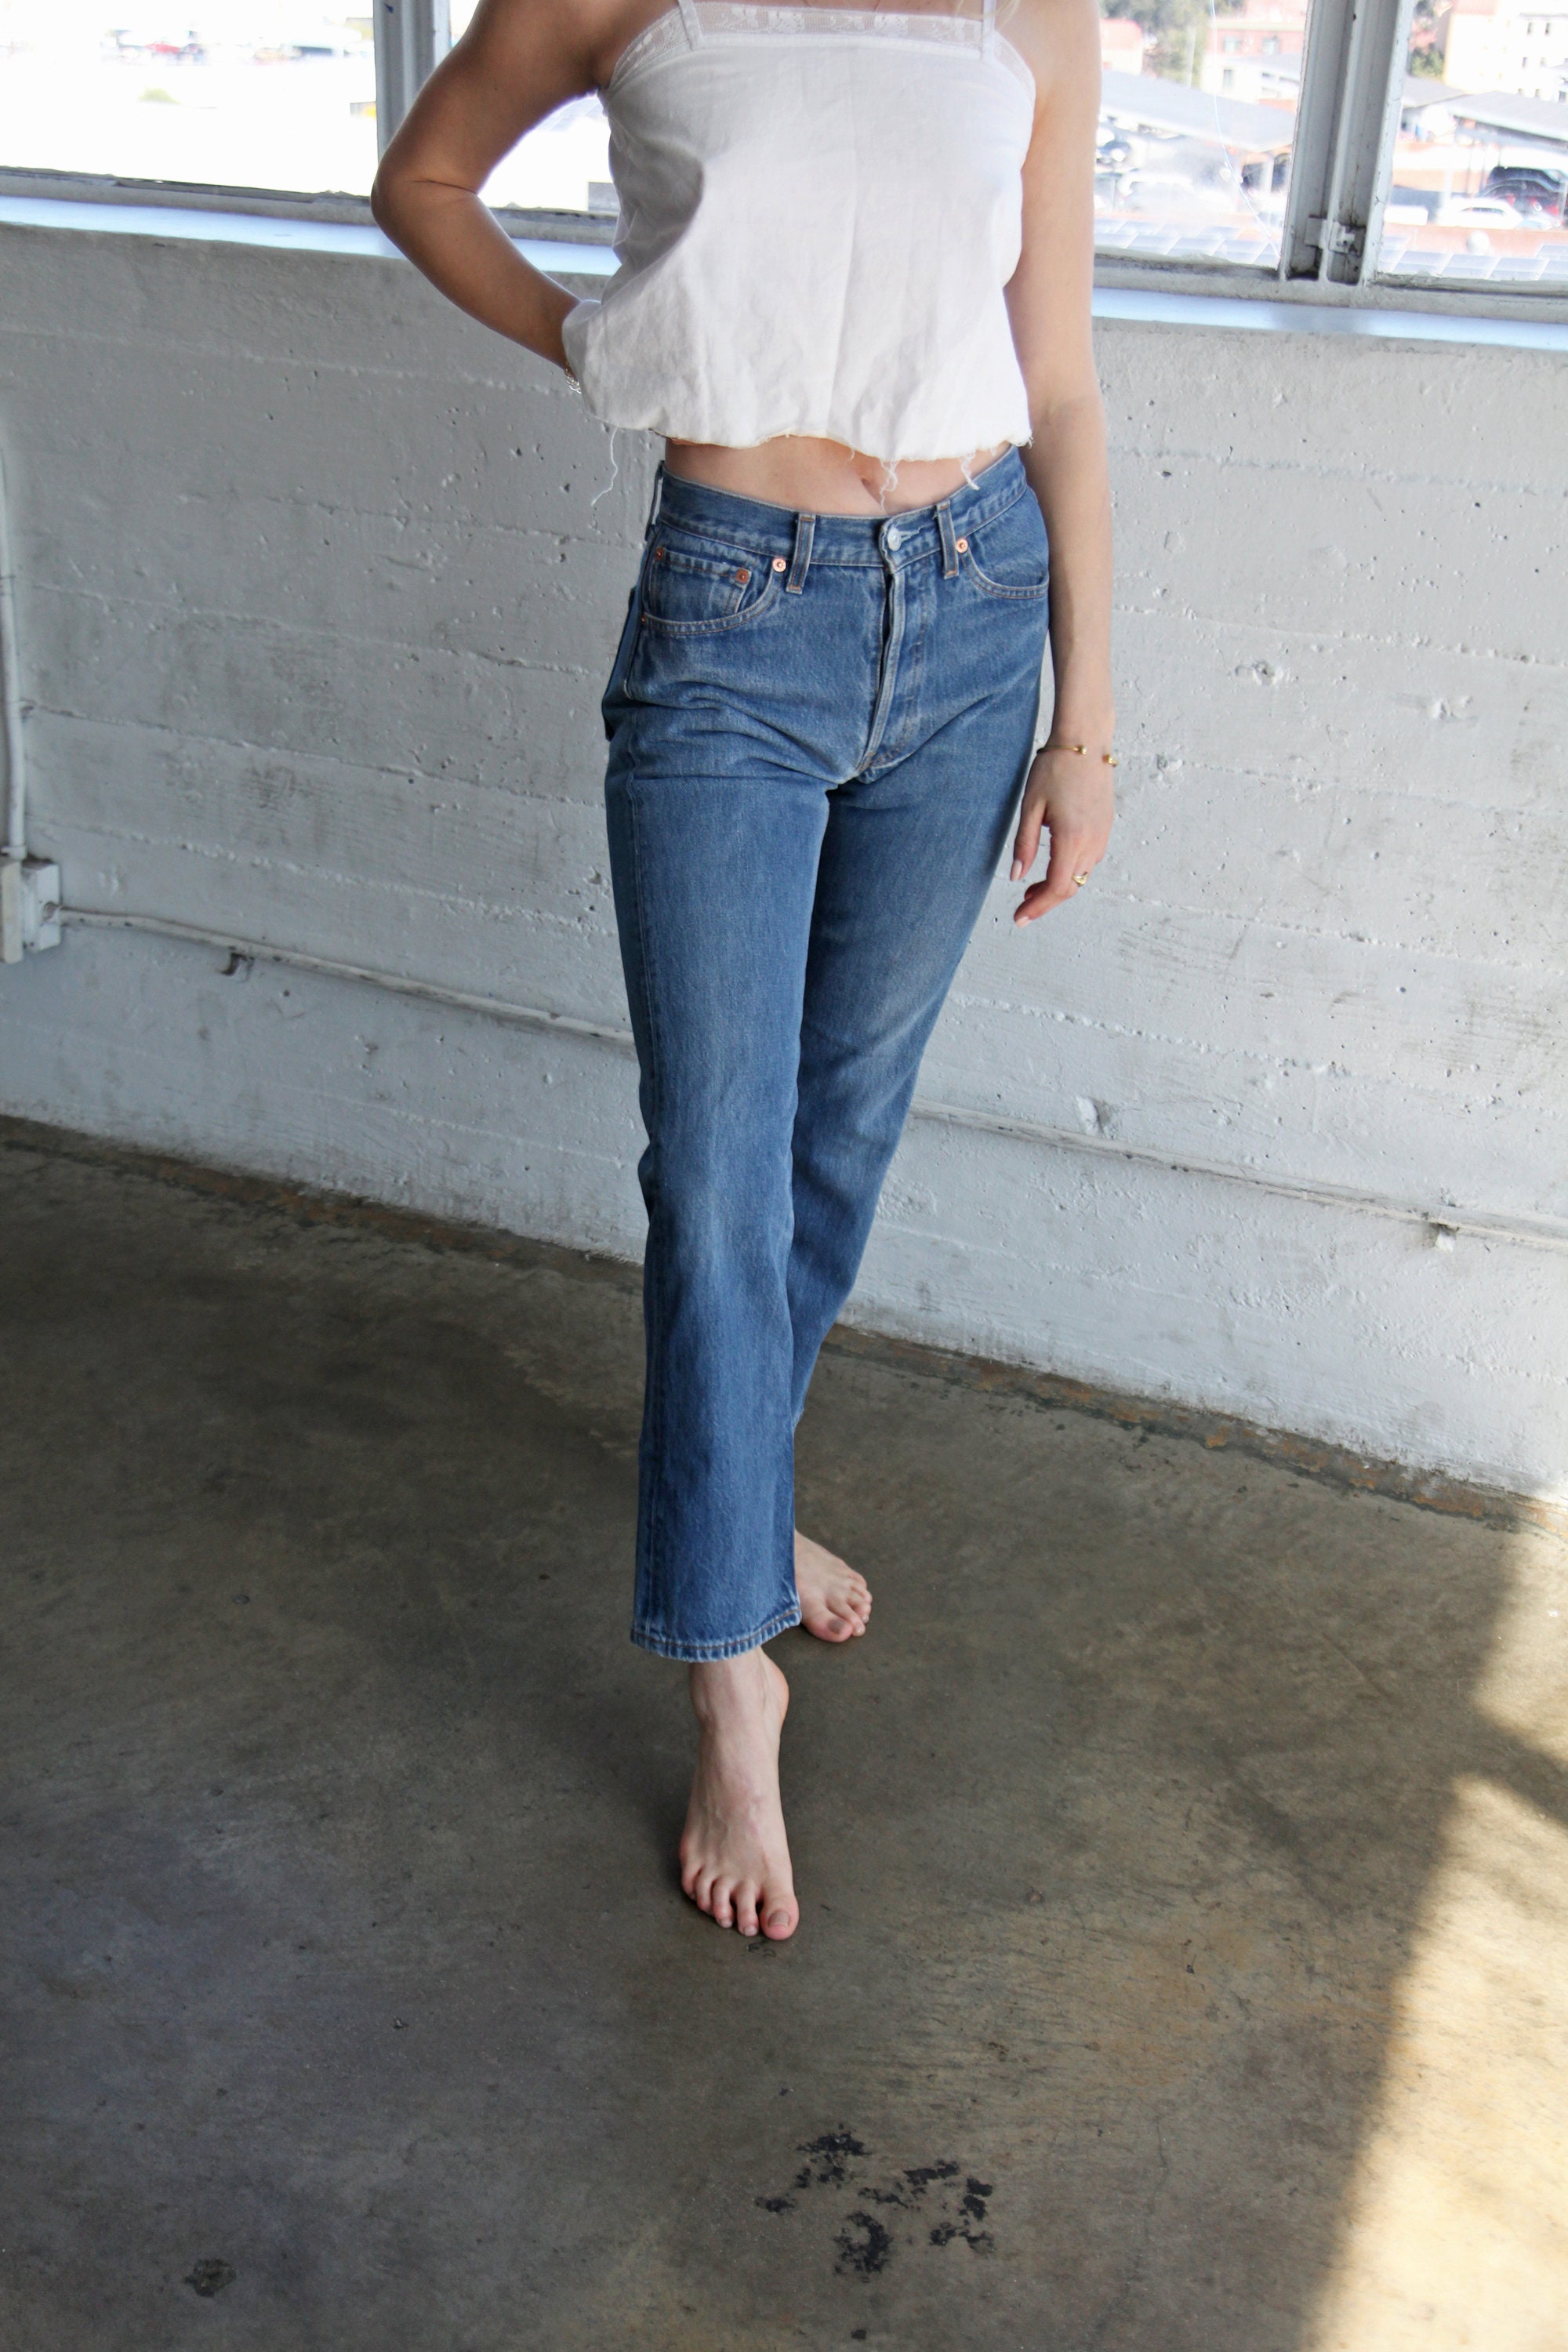 LEVI'S 501 Jeans - size 26